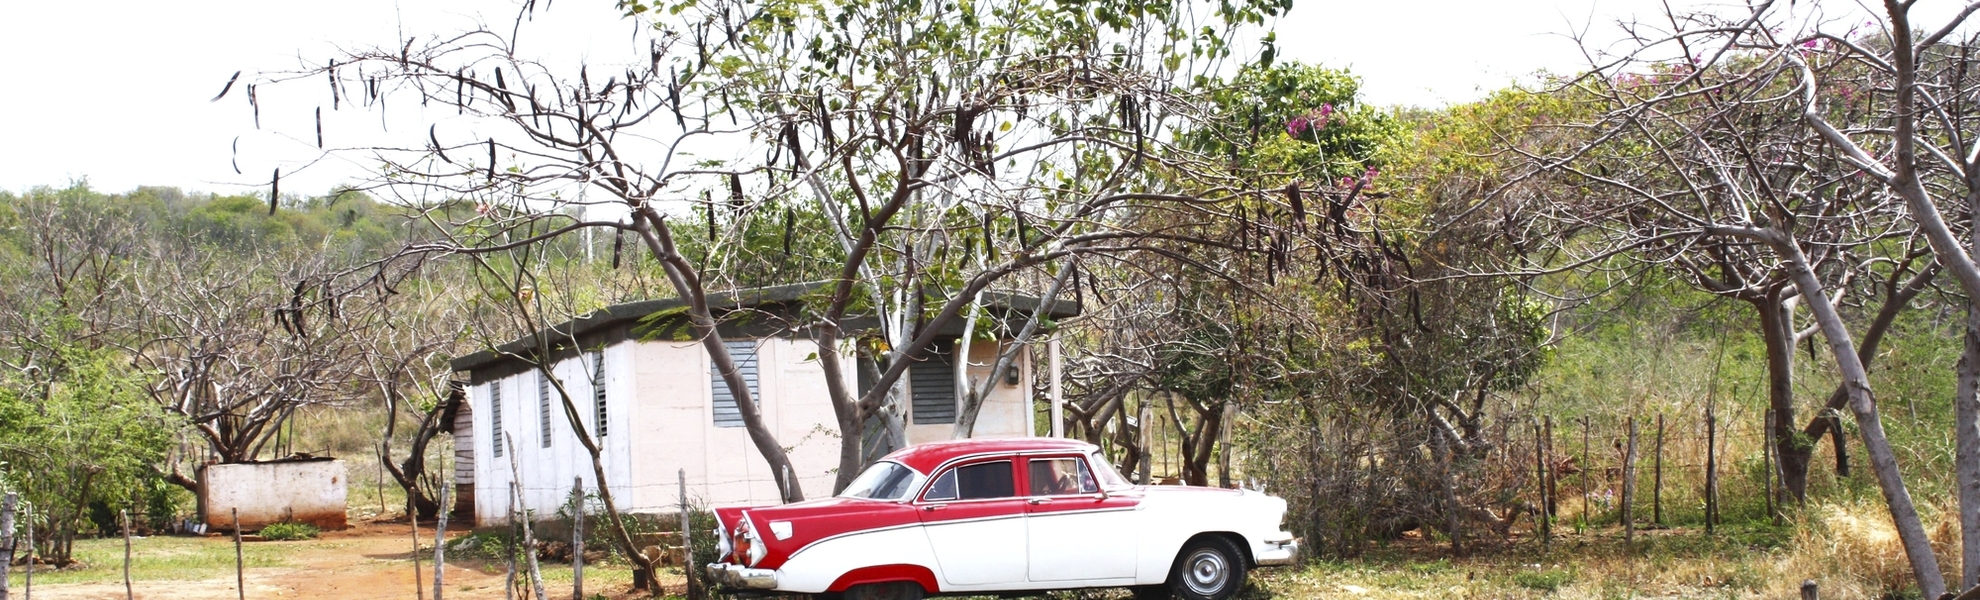 Kuba - Oldtimer vor Hütte